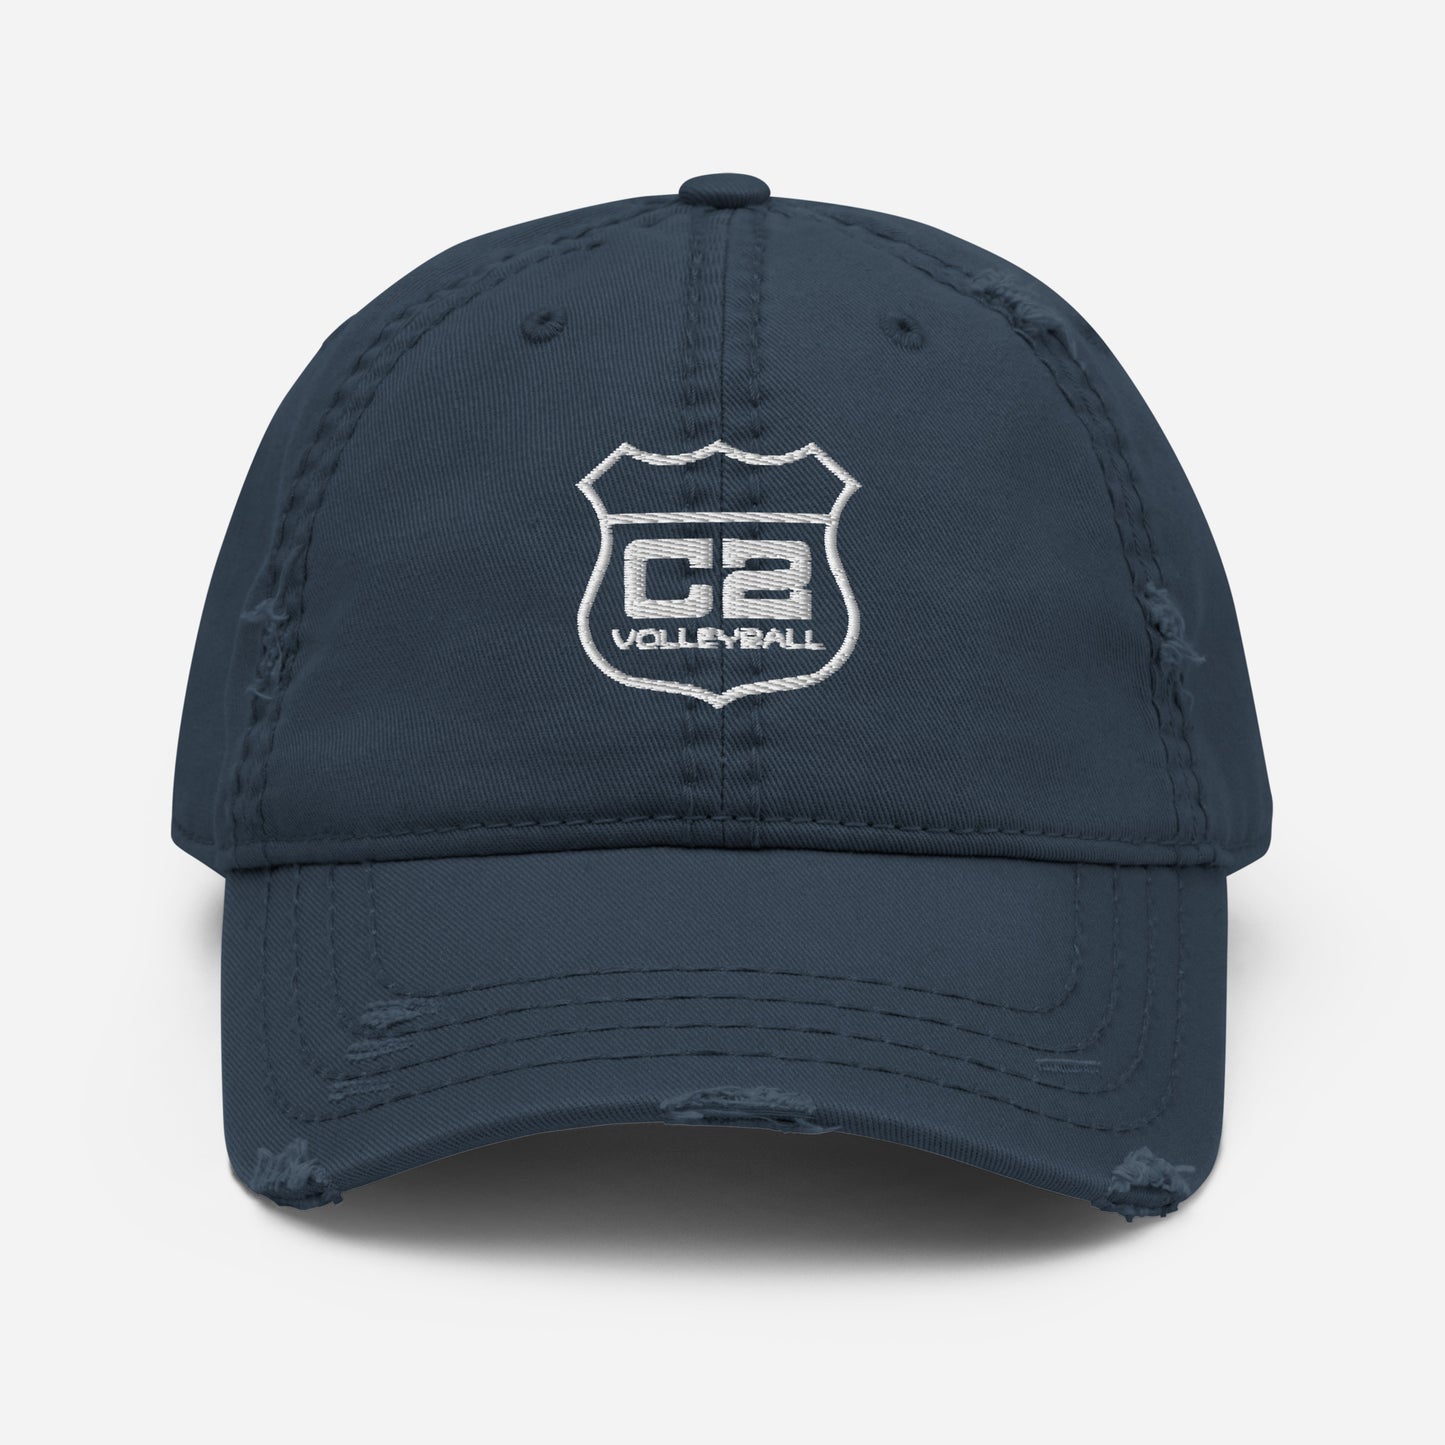 C2 Interstate Distressed Cap